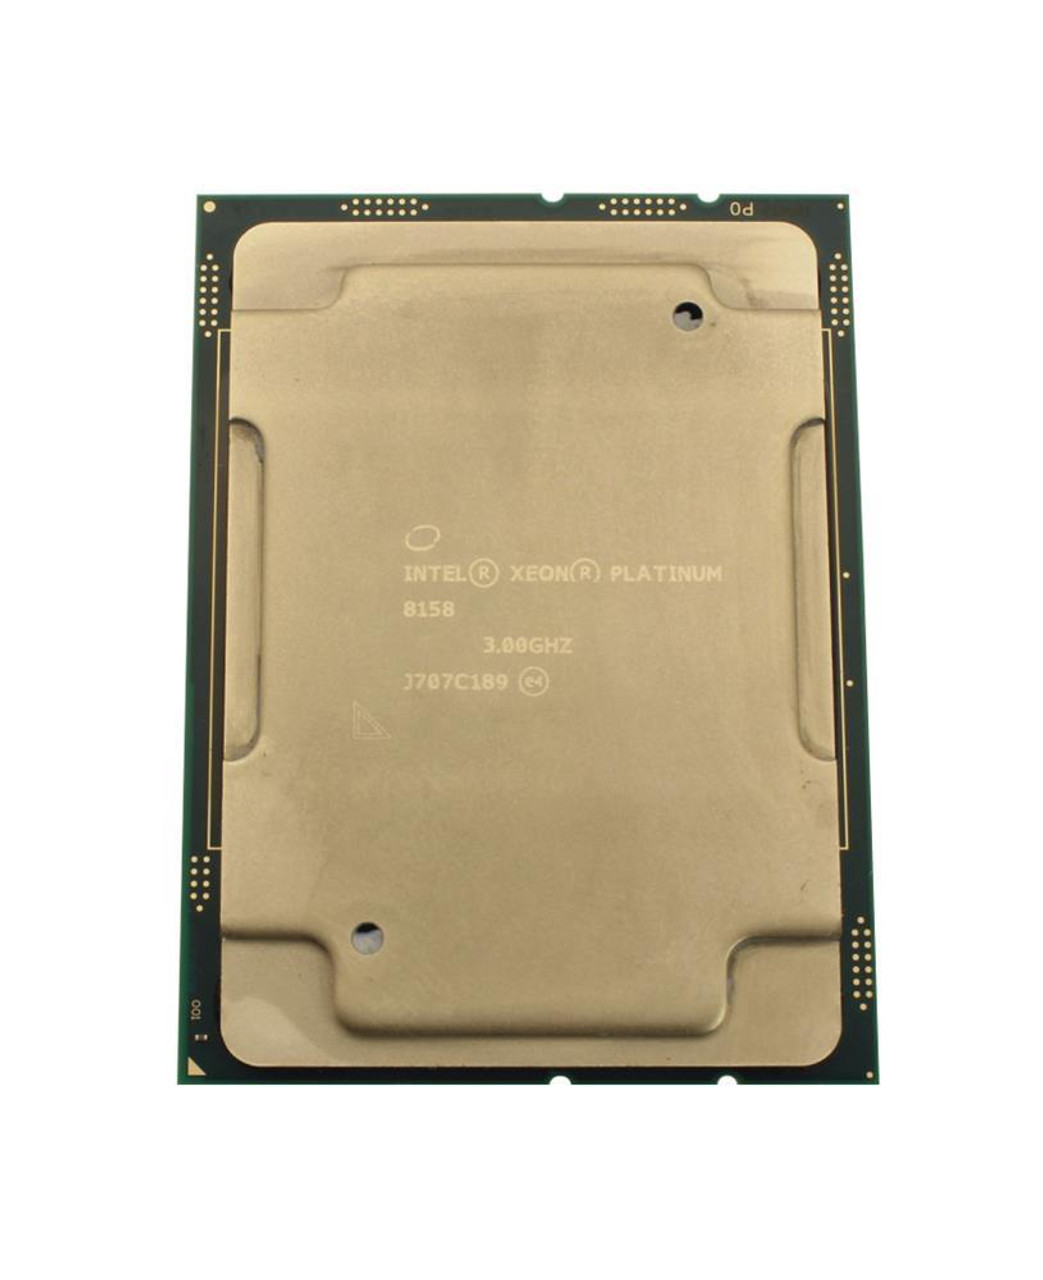 Dell 3.00GHz 10.40GT/s UPI 24.75MB L3 Cache Socket LGA3647 Intel Xeon Platinum 8158 12-Core Processor Upgrade